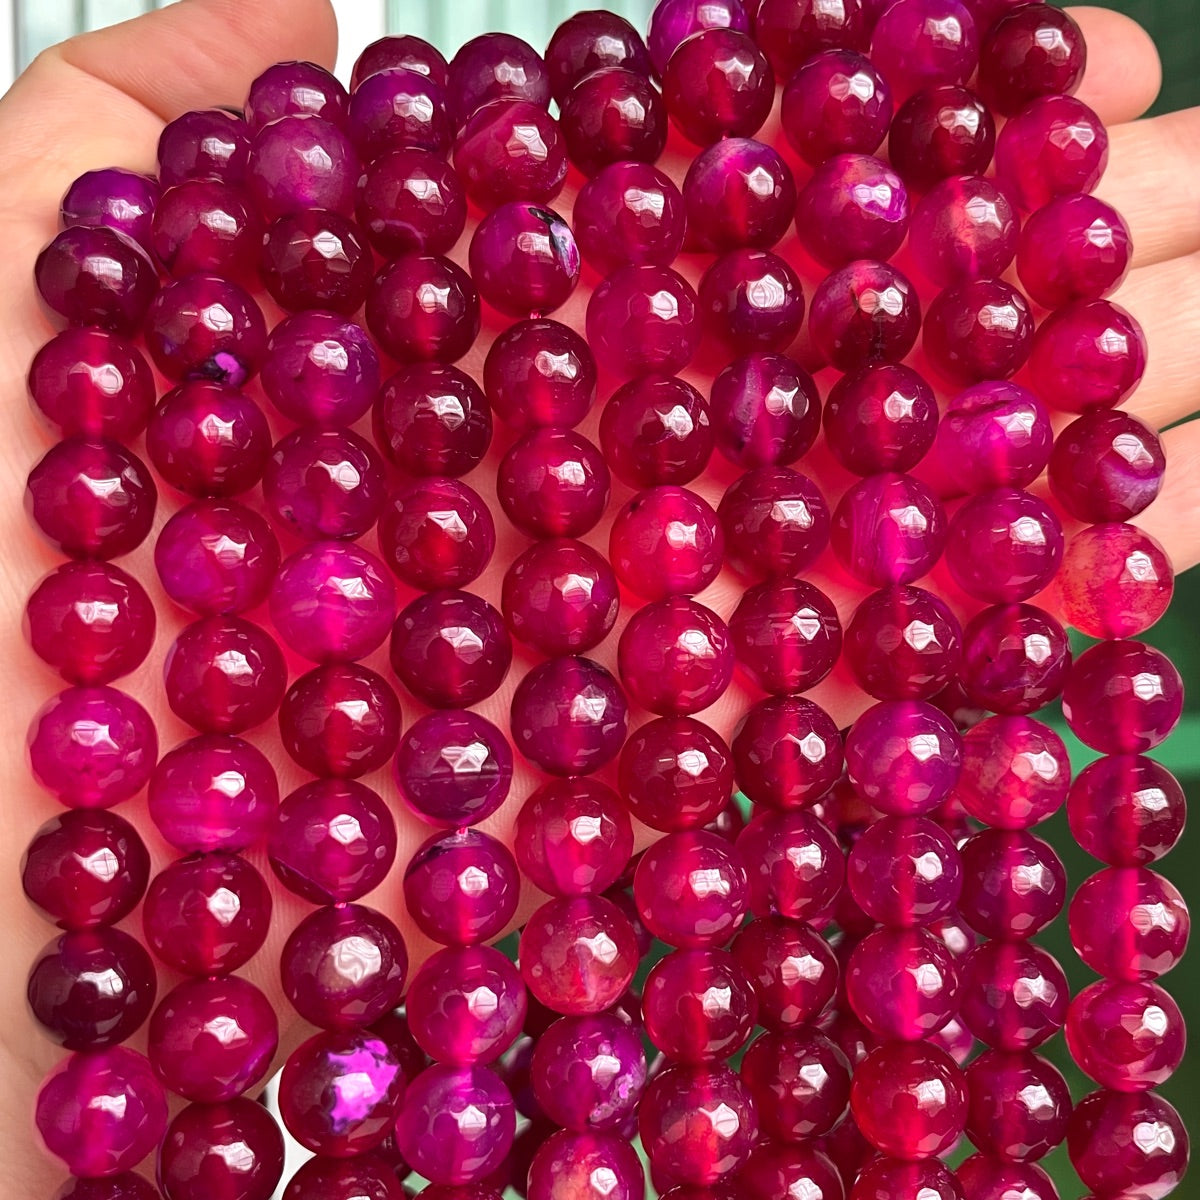 2 Strands/lot 10mm Dark Fuchsia Agate Faceted Stone Beads Stone Beads Breast Cancer Awareness Faceted Agate Beads New Beads Arrivals Charms Beads Beyond